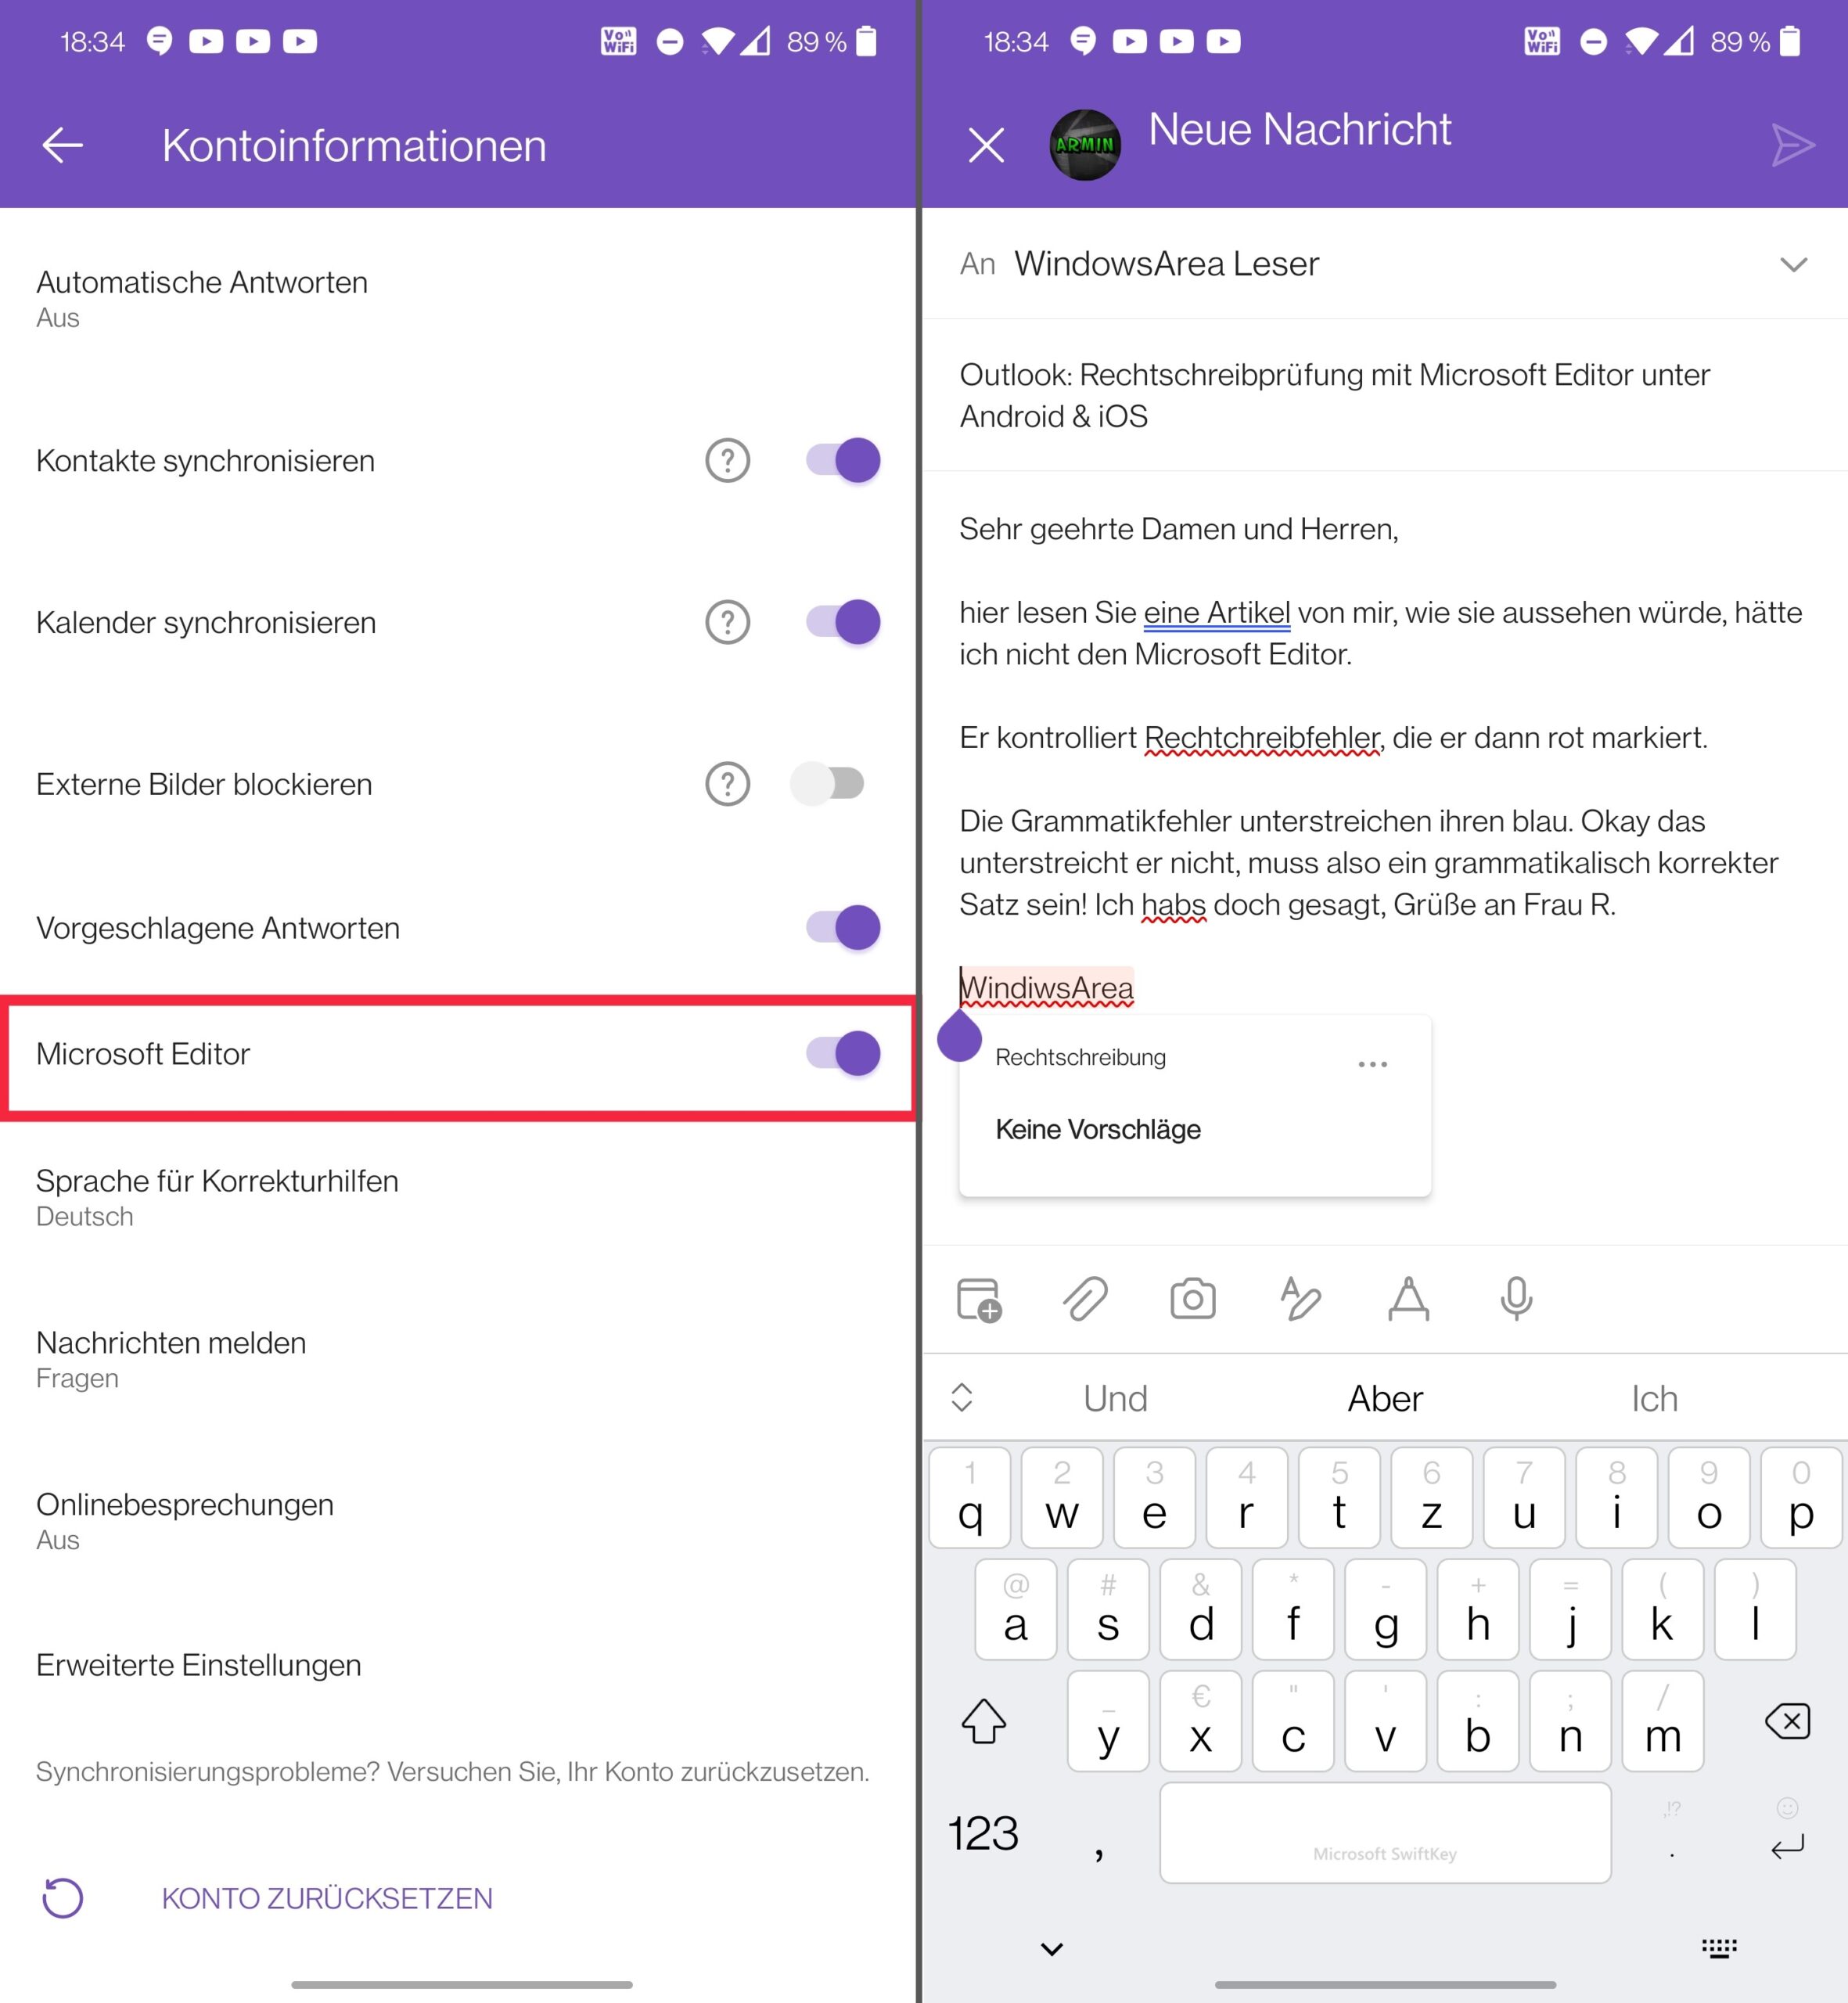 Outlook: Rechtschreibprüfung mit Microsoft Editor unter Android & iOS